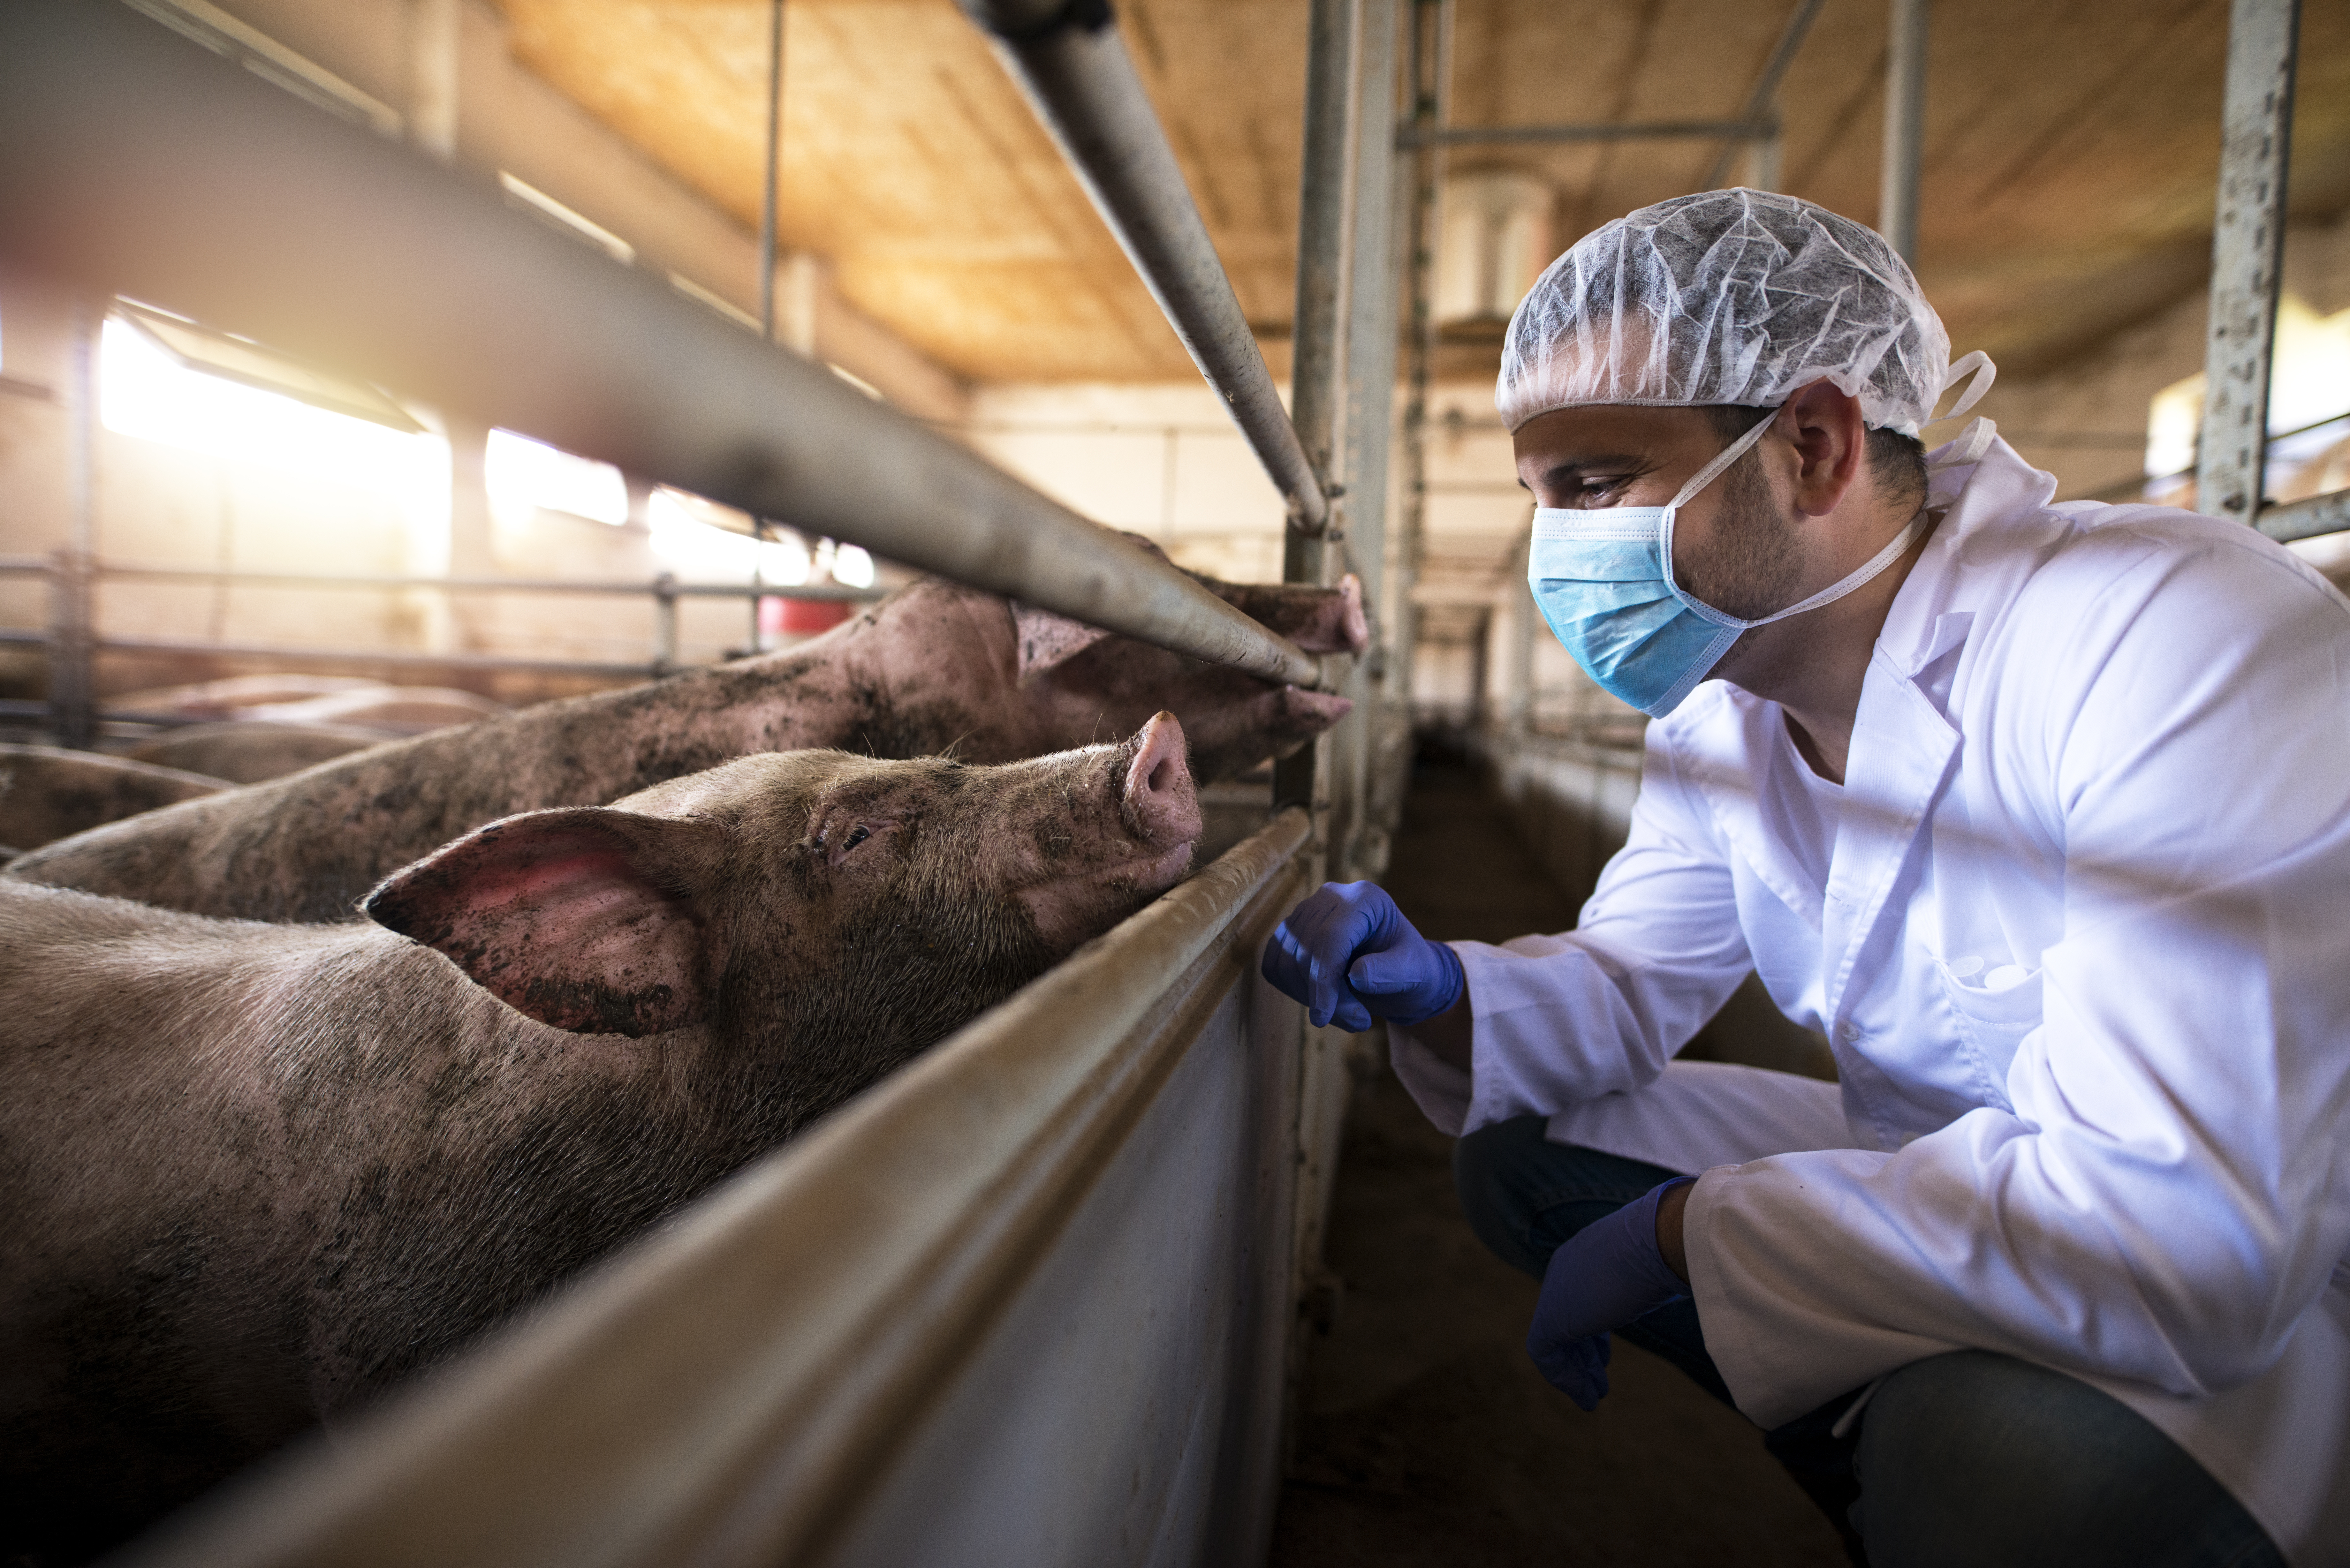 vet observes pigs in an indoor pen